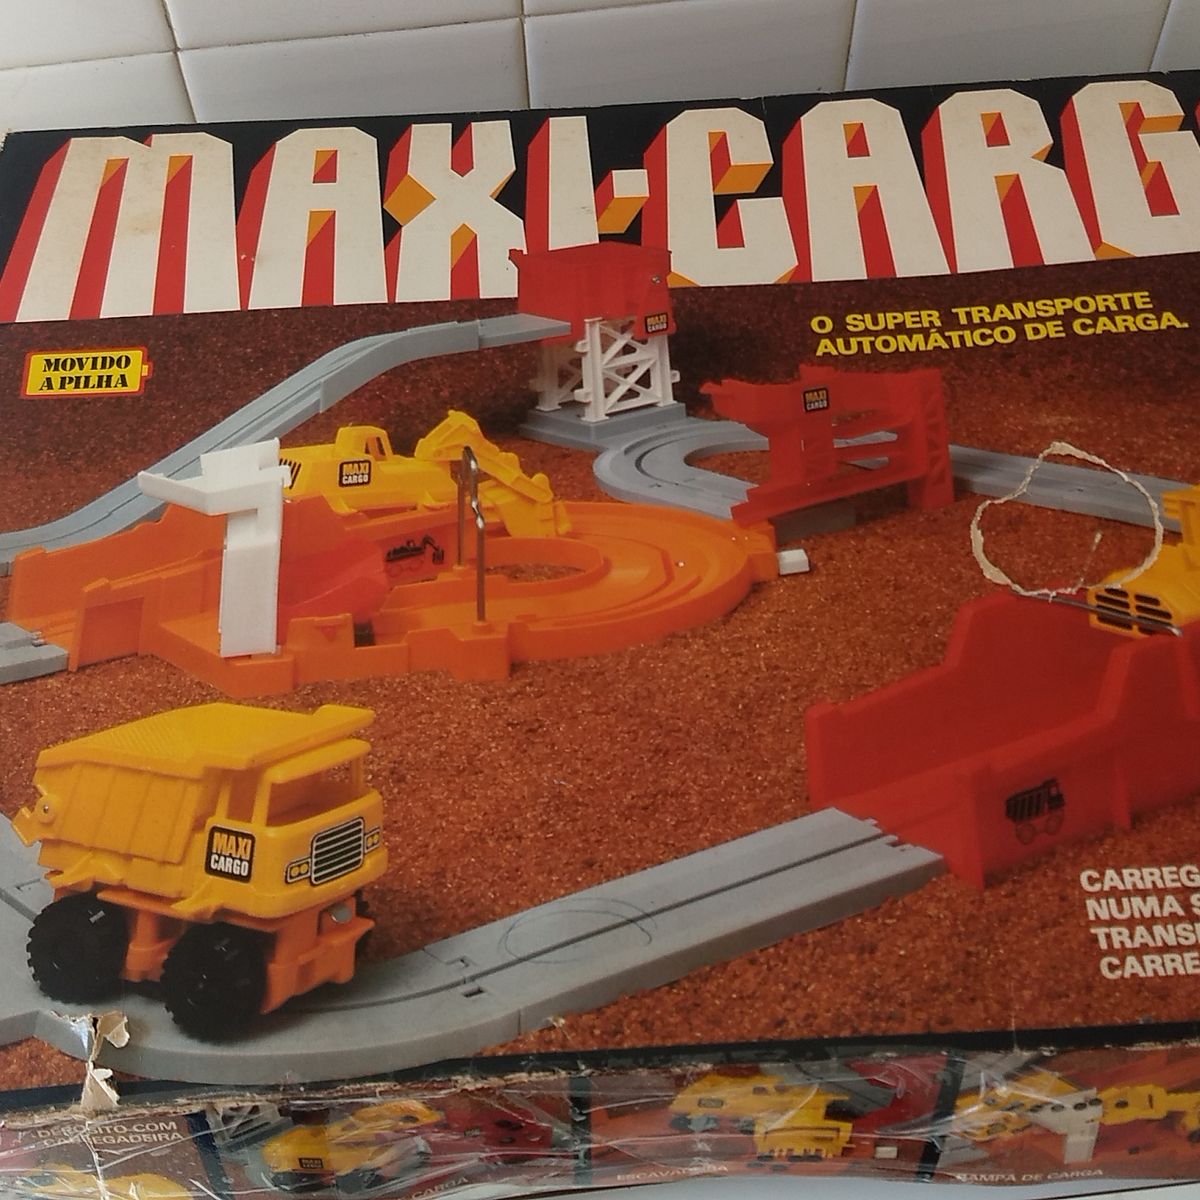 Brinquedos Raros - Jogo Perfil 2 Década de 1980